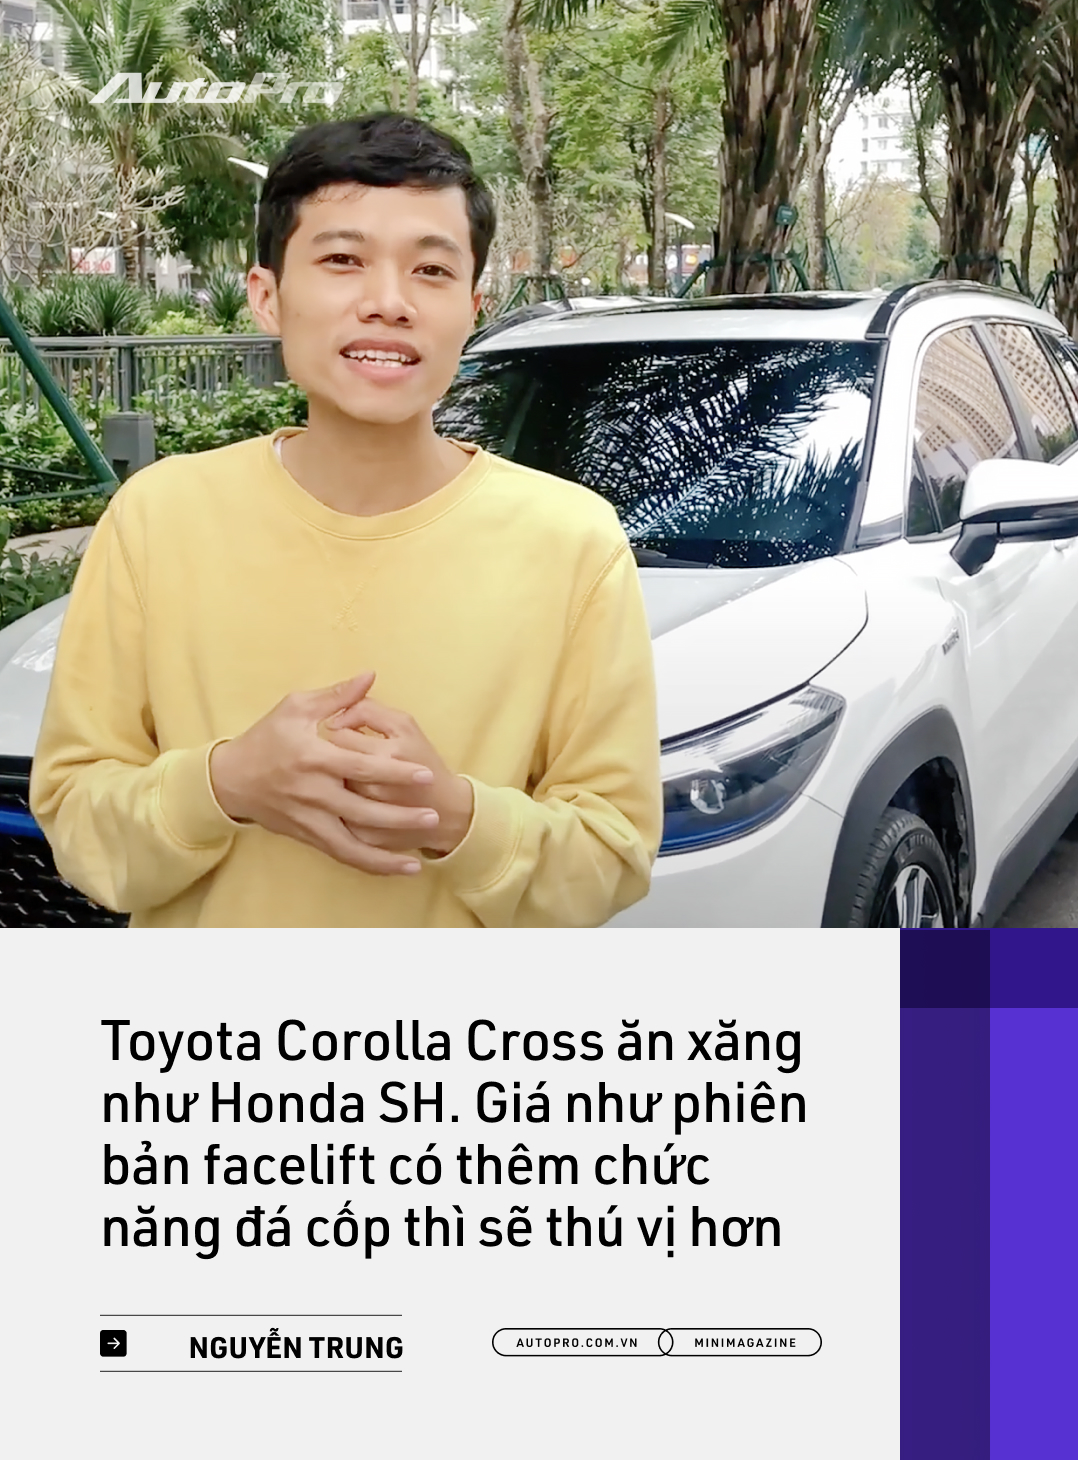 Những kiểu khách chốt đơn Toyota Corolla Cross sau 1 năm bán tại Việt Nam: Người bỏ Mercedes, người mua chỉ vì thương hiệu - Ảnh 21.